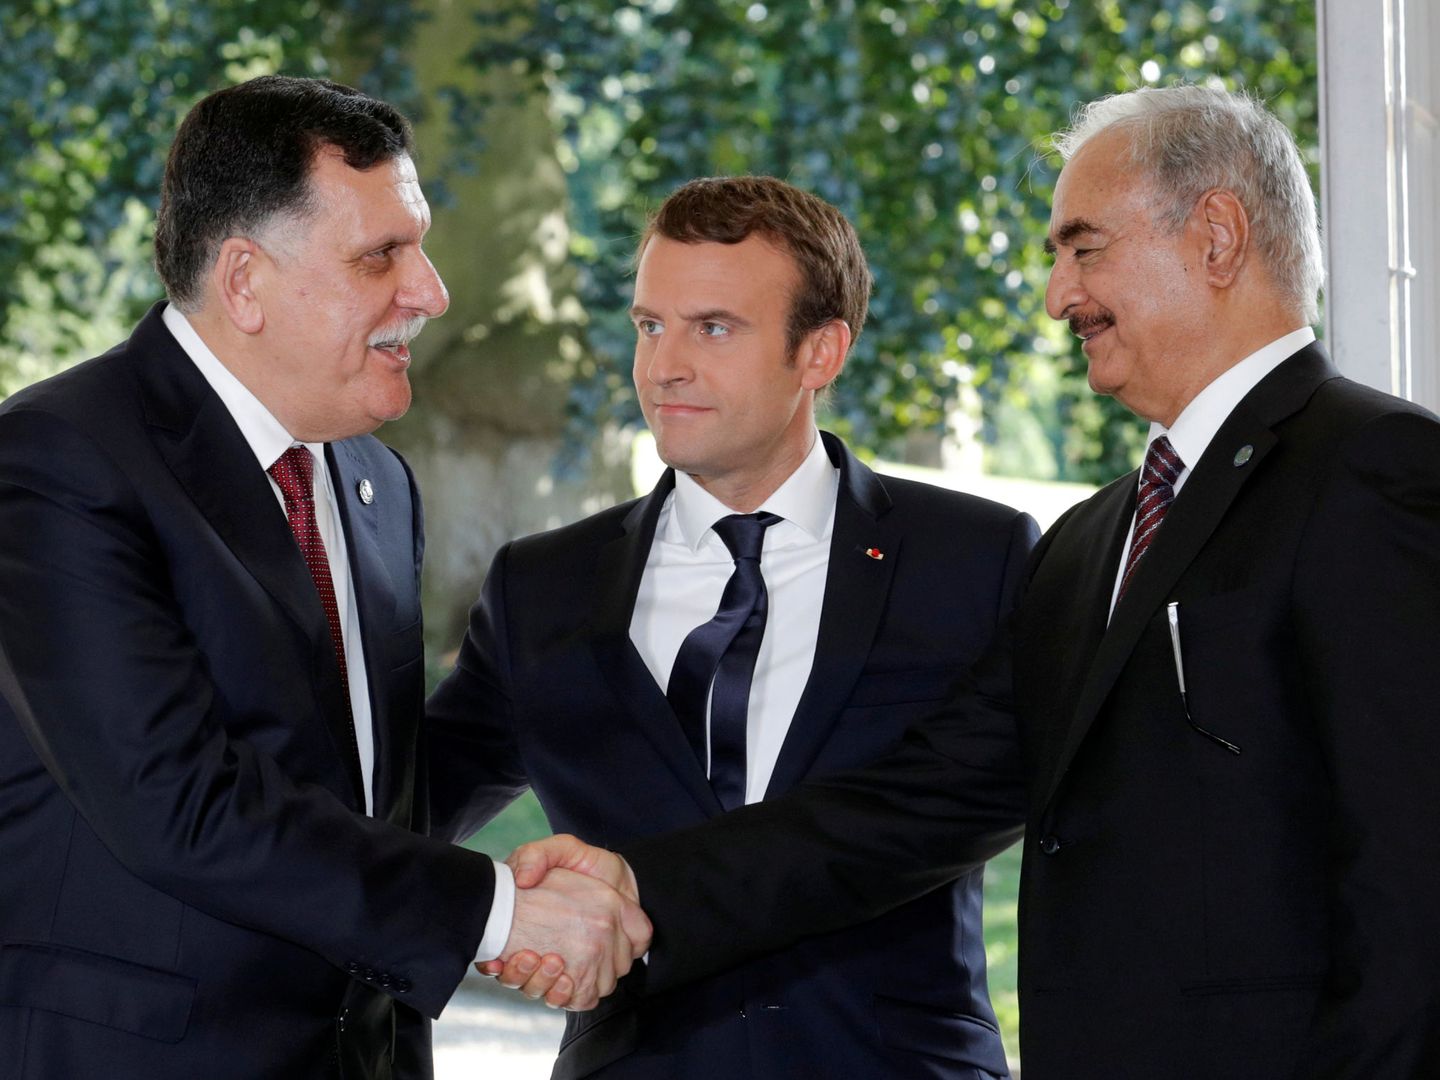 Macron reúne a los representantes de los dos gobiernos de Libia, el primer ministro, Fayez al-Sarraj, y el general Khalifa Haftar, en La Celle-Saint-Cloud, París, el 25 de julio de 2017. (Reuters)